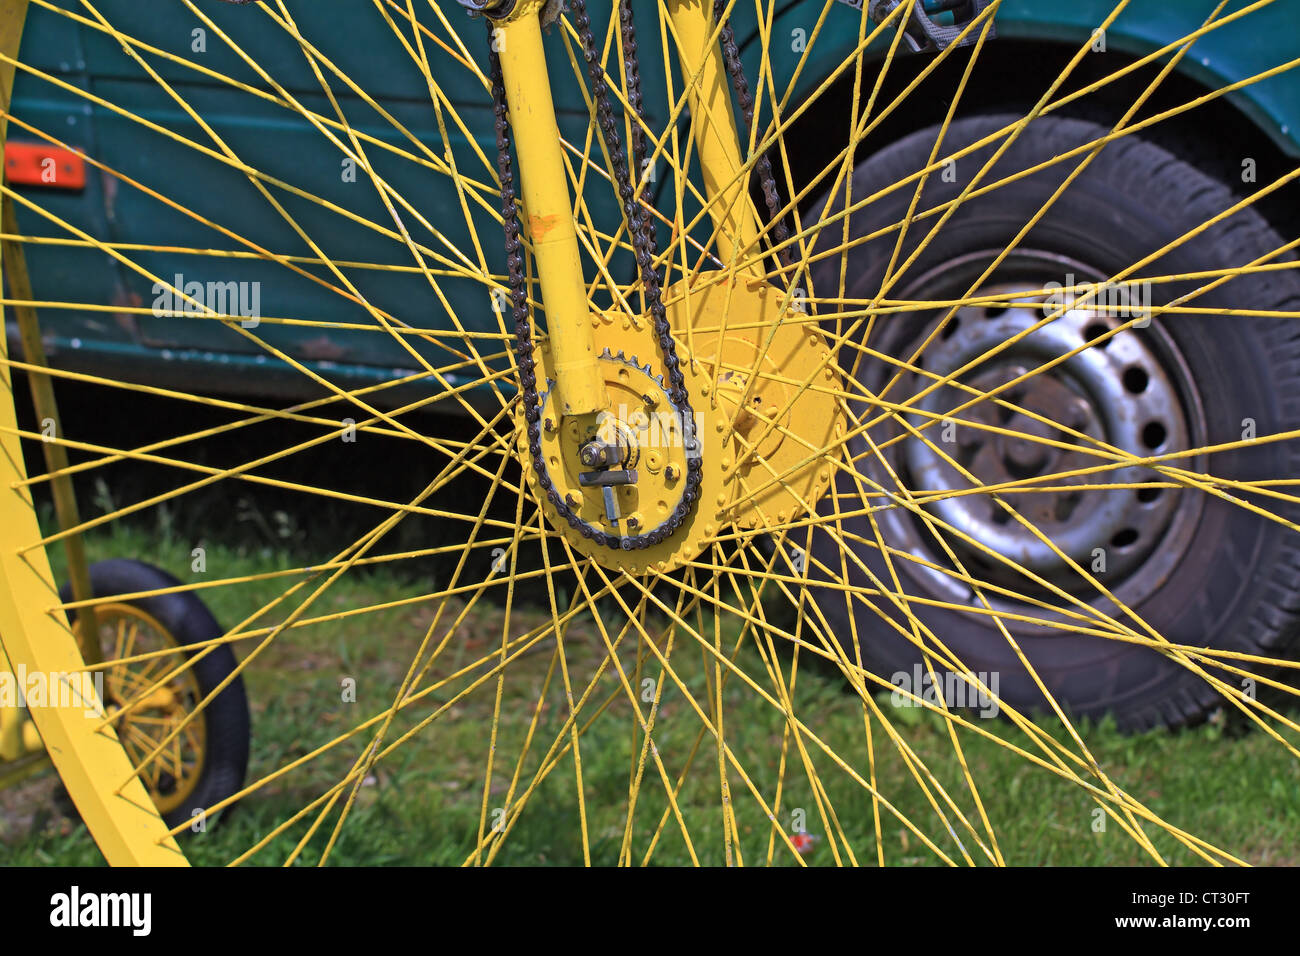 yellow bicycle wheel Stock Photo